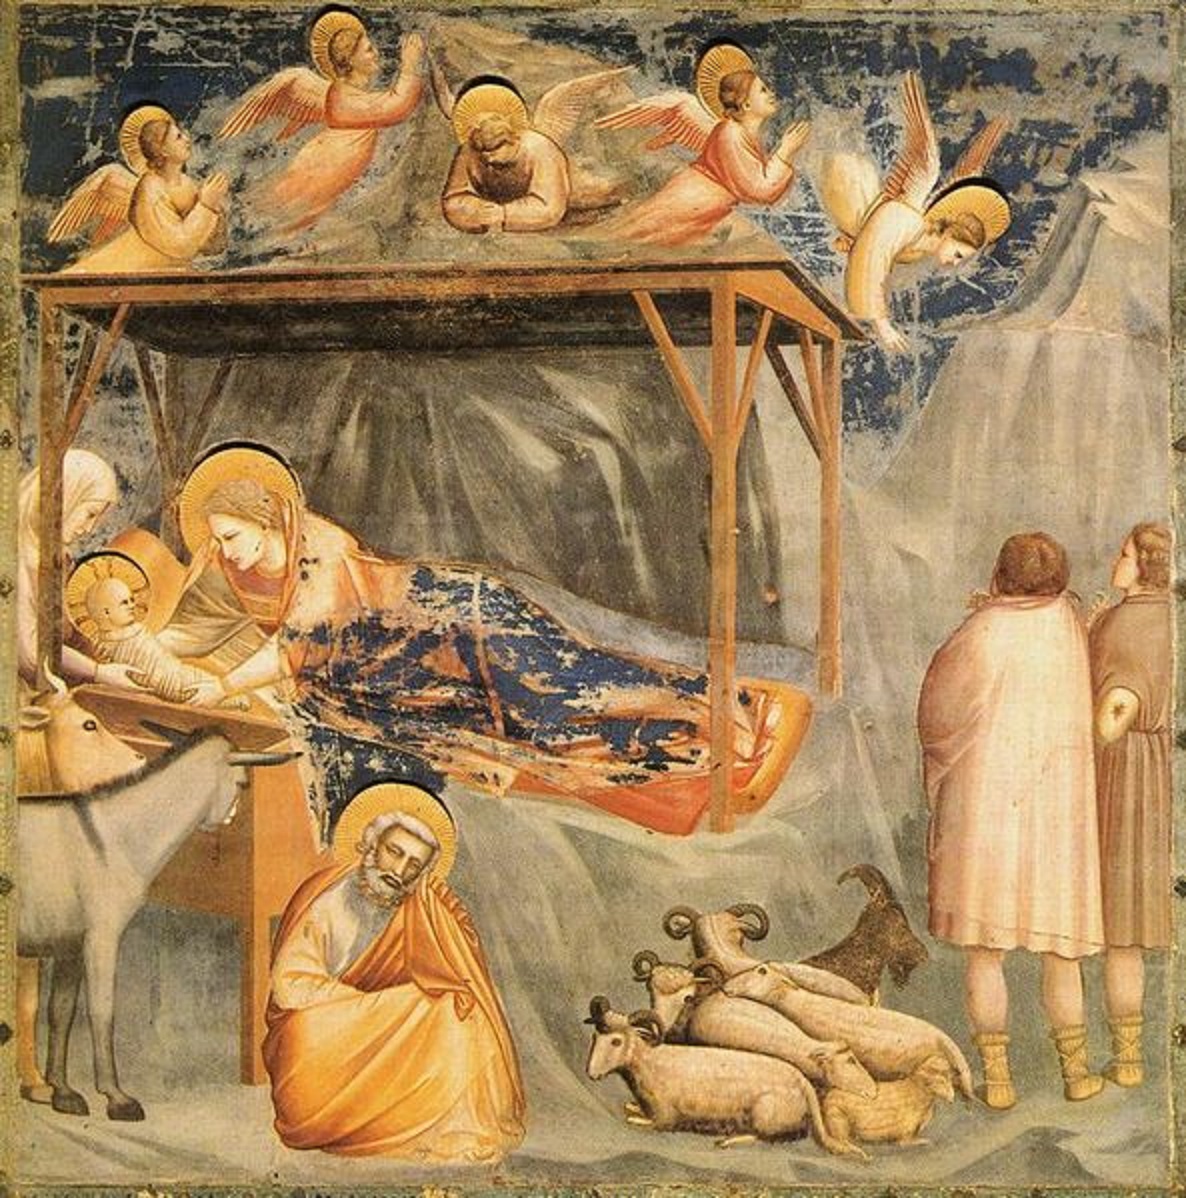 #natalenellarte
#Giotto #cappelladegliscrovegni nell'attesa
#buonavigilia